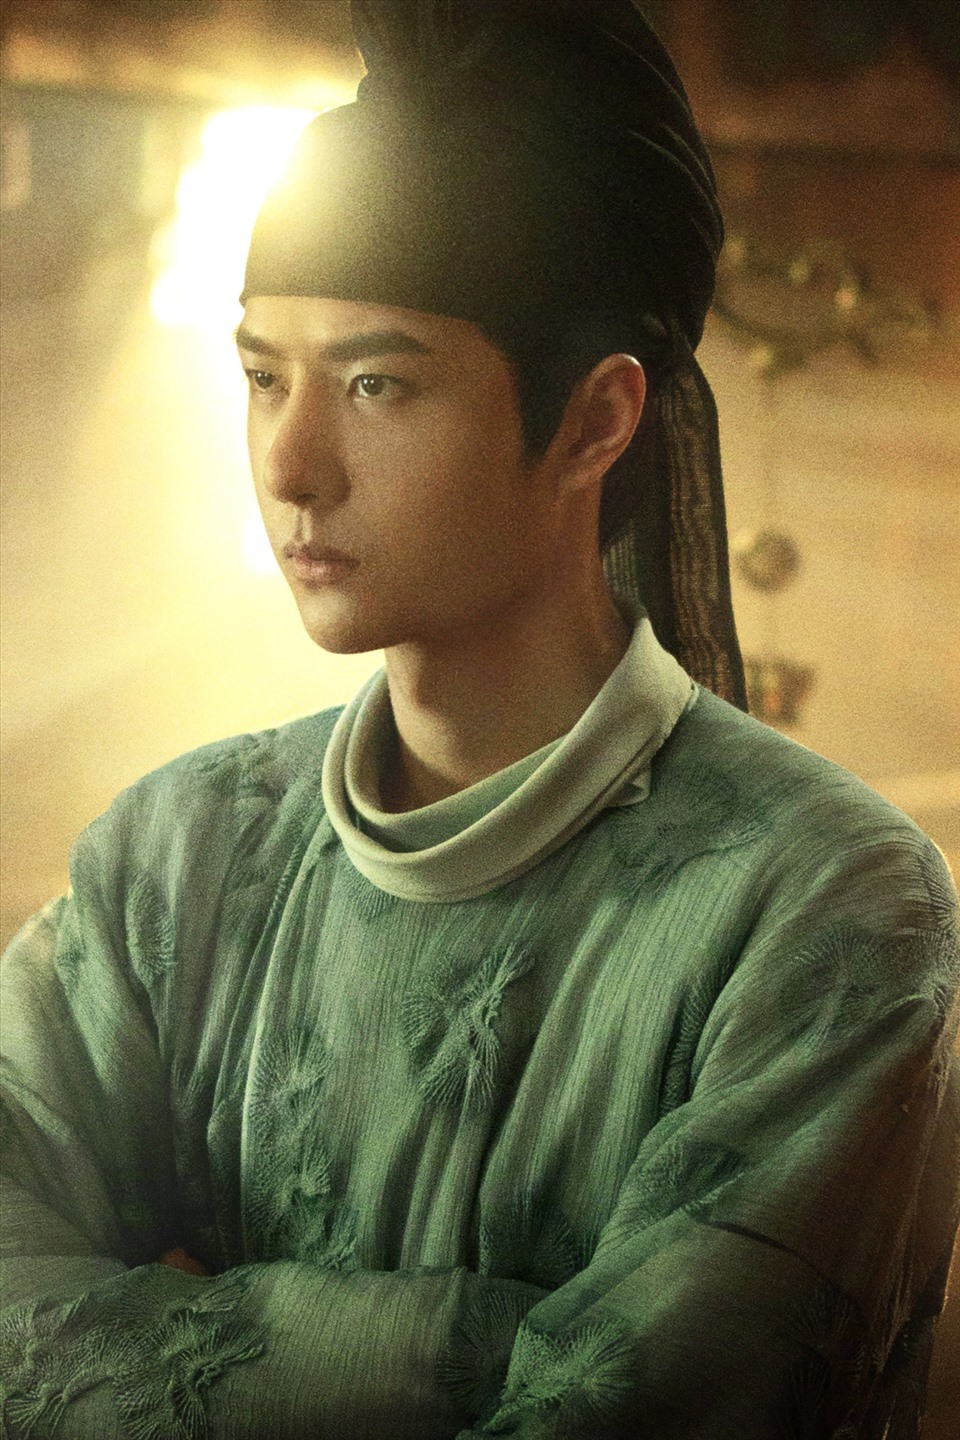 Vương Nhất Bác đảm nhận 1 trong 3 vai chính của “Phong khởi lạc dương”. Ảnh: Xinhua